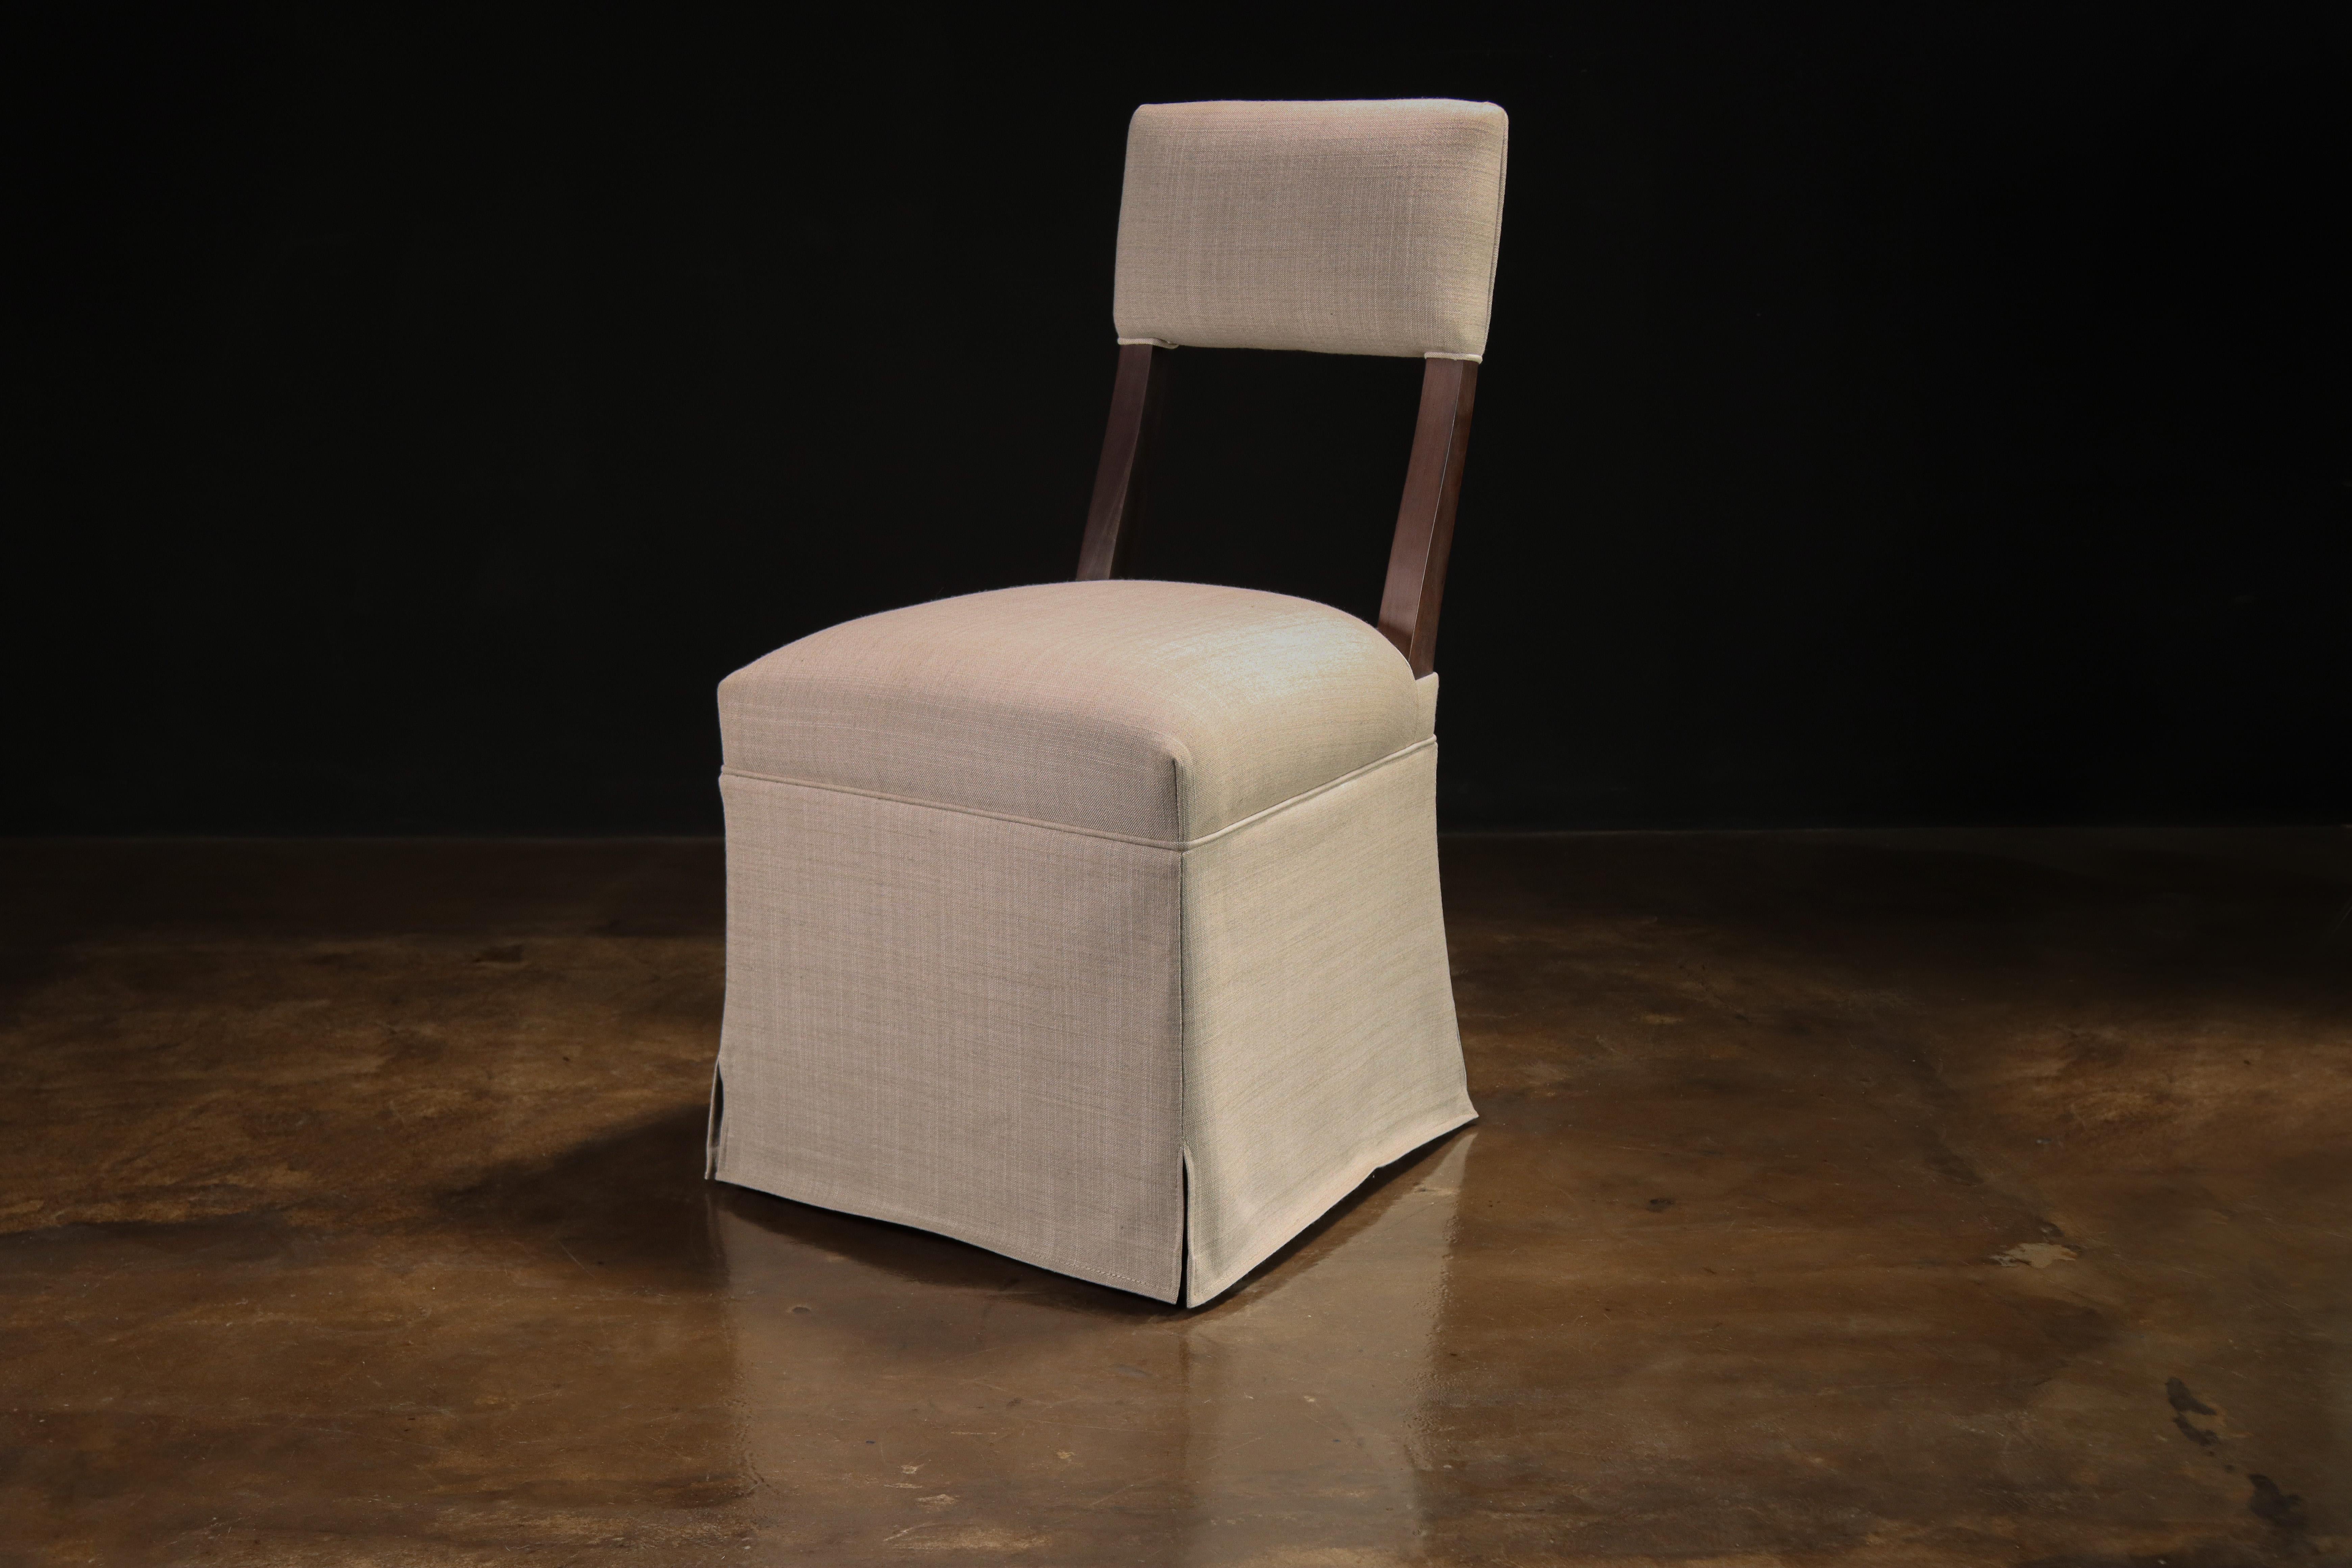 Die sanft geschwungene, hohe Rückenlehne des Luca Chair strahlt Eleganz aus und ist zu einem der meistverkauften Stücke von Costantini geworden. In der Regel schnell lieferbar in dem Polstermaterial Ihrer Wahl.

Die Maße sind 19